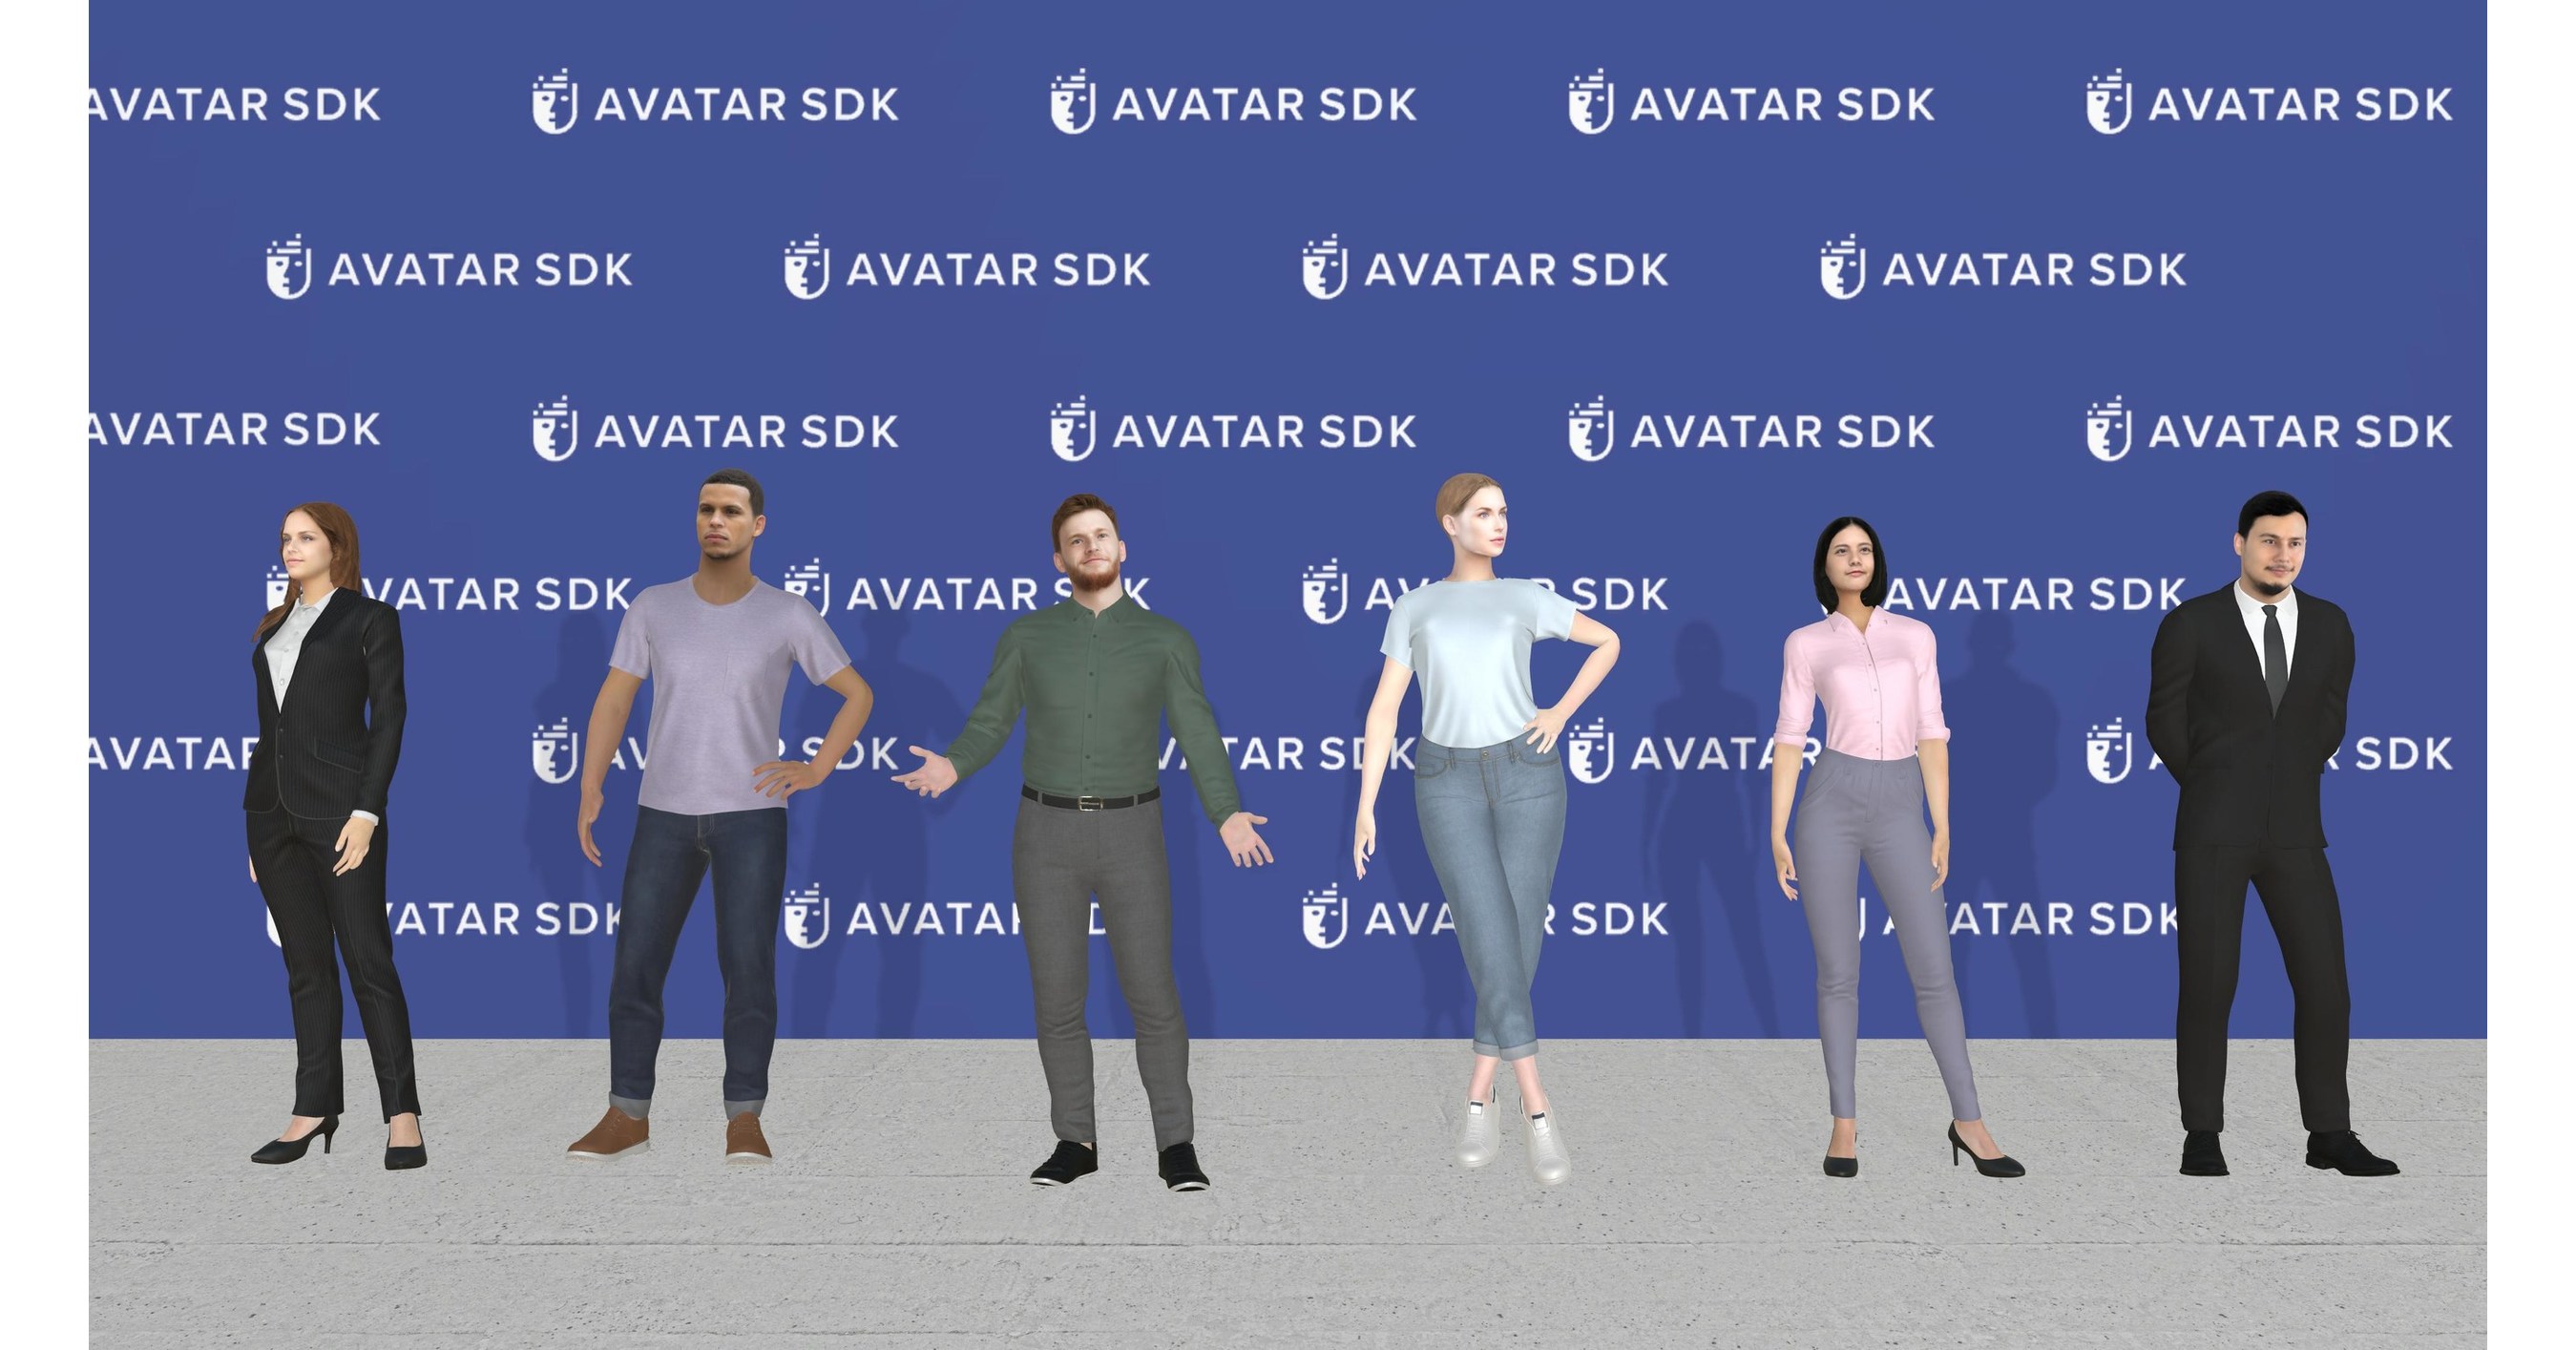 Itseez3D Avatar SDK đã được phát triển để biến giấc mơ của bạn thành sự thật. Với công nghệ tiên tiến nhất, việc biến chính bạn thành một nhân vật 3D chỉ cần vài giây. Bạn có thể sử dụng nó để tham gia các trò chơi hoặc tạo ra những video clip đầy màu sắc với những nhân vật tự tạo.